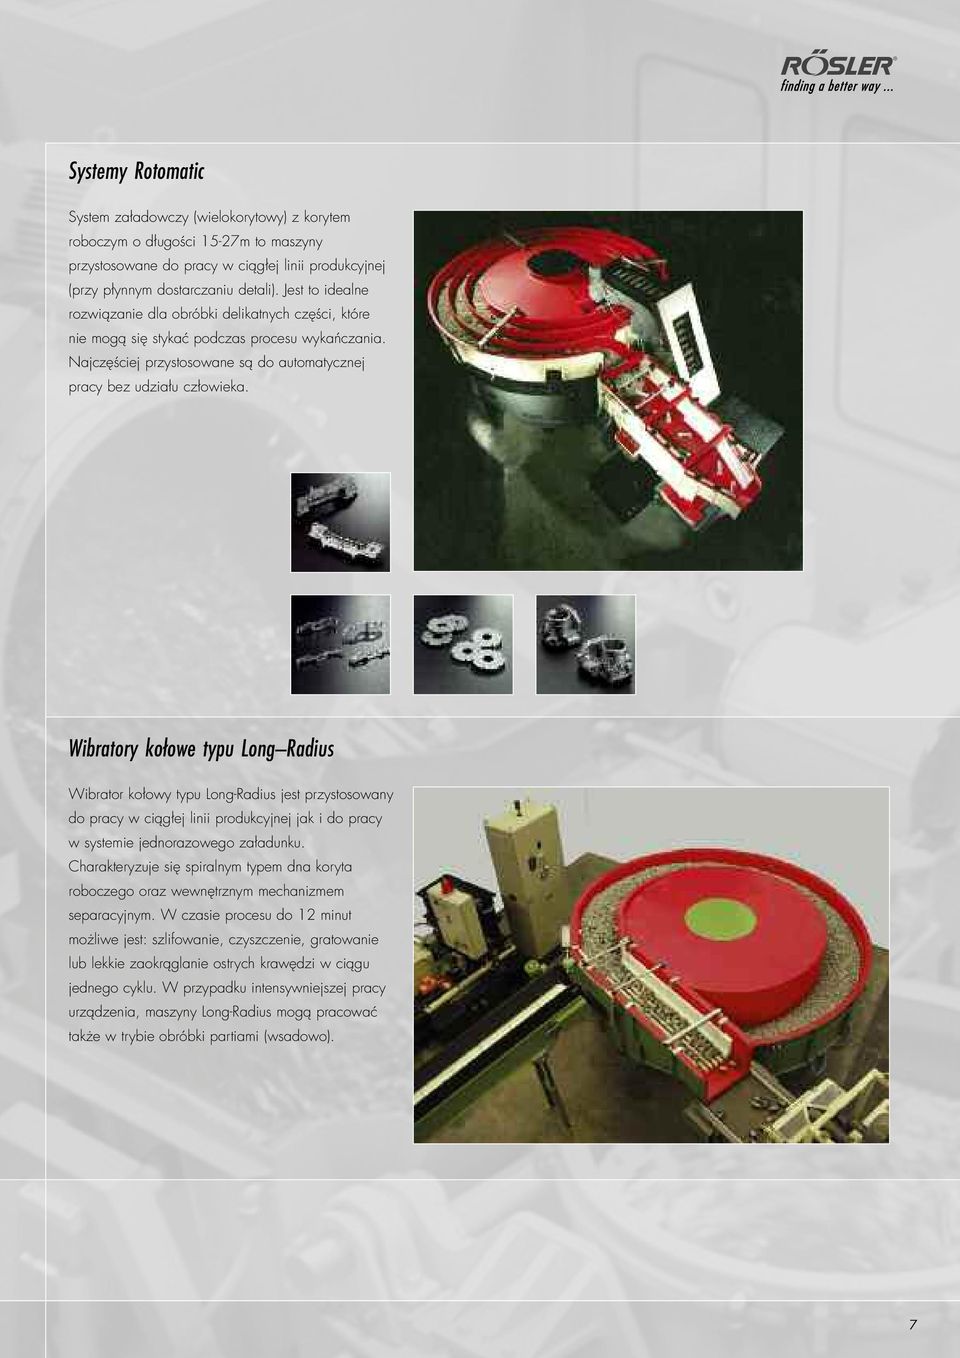 Wibratory kołowe typu Long Radius Wibrator kołowy typu Long-Radius jest przystosowany do pracy w ciągłej linii produkcyjnej jak i do pracy w systemie jednorazowego załadunku.